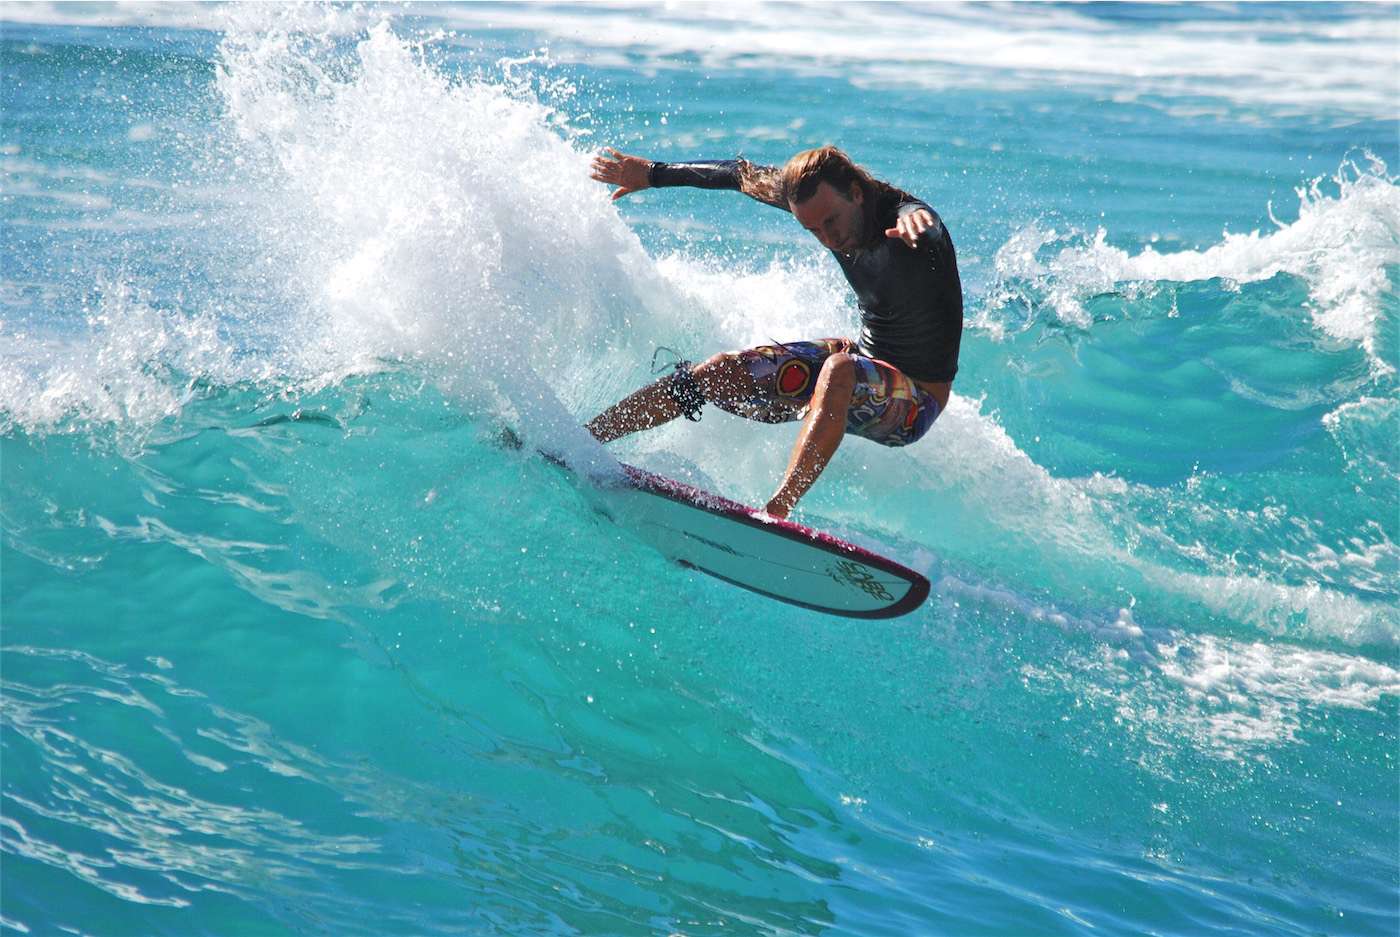 surfer on wave